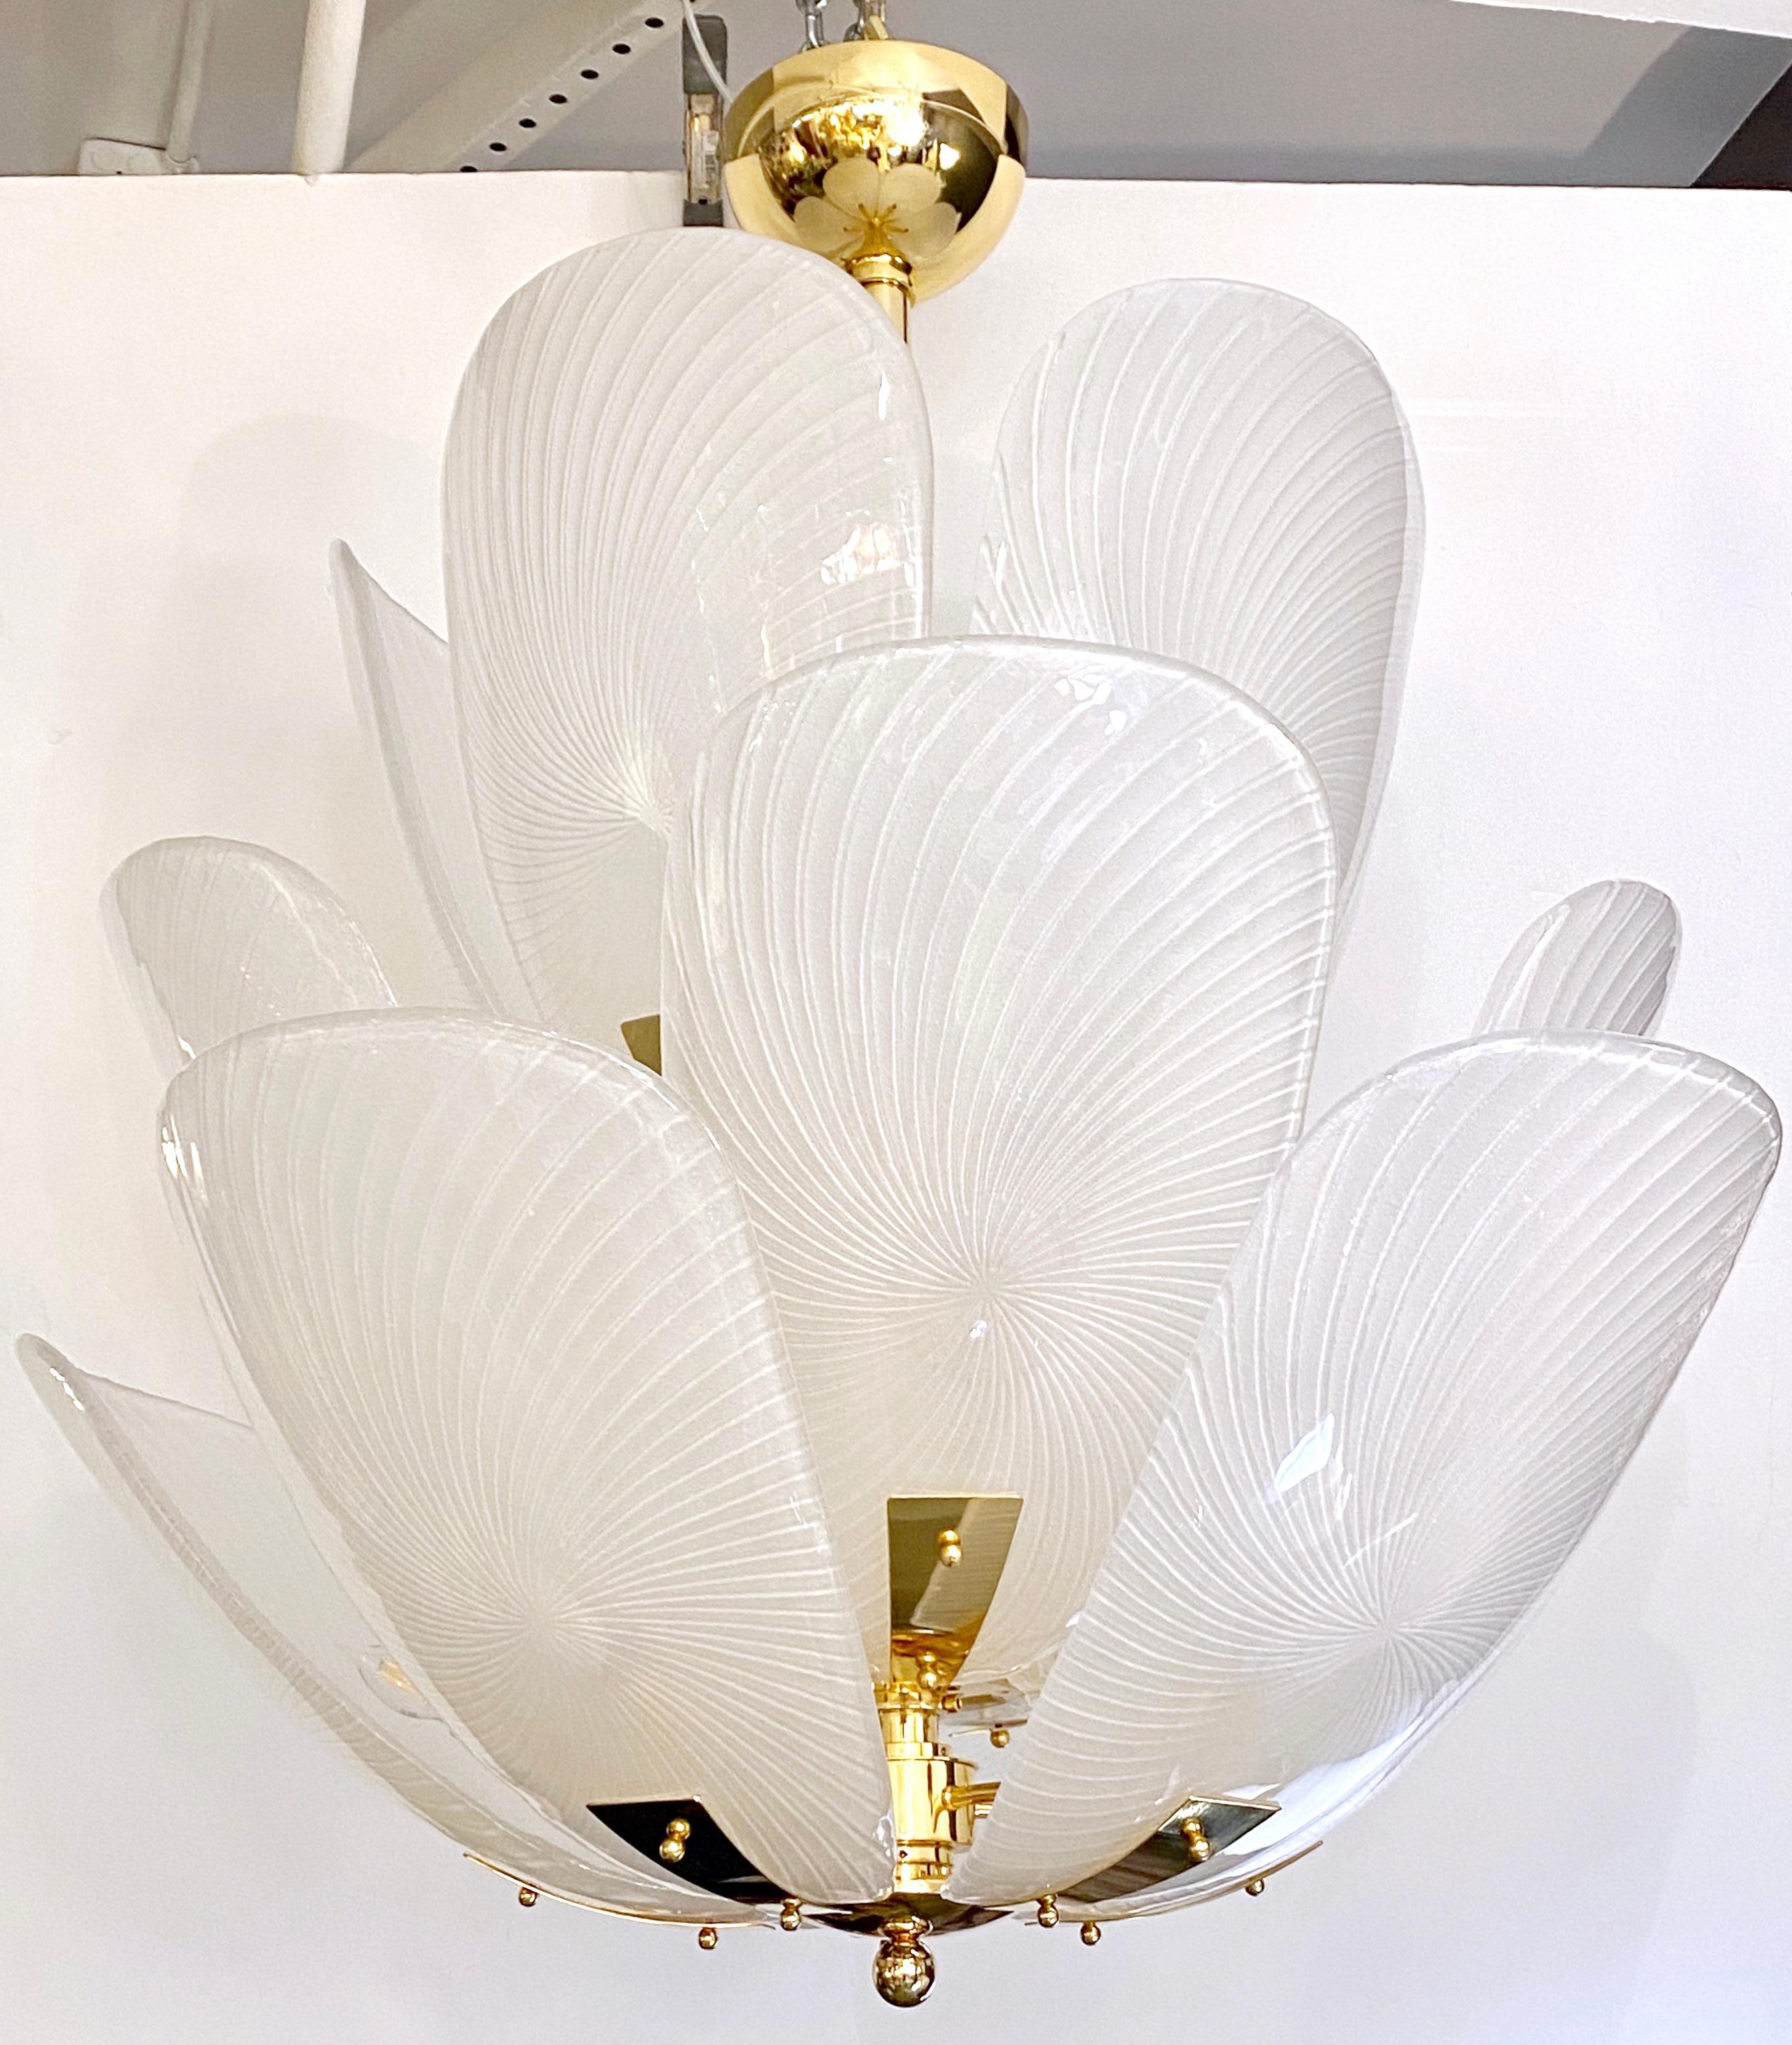 Création contemporaine de la plus haute qualité et sophistication, ce luminaire, au Design/One et au style Hollywood Regency, est entièrement fabriqué à la main en Italie, et composé de feuilles de verre blanc de Murano soufflées, qui sont disposées